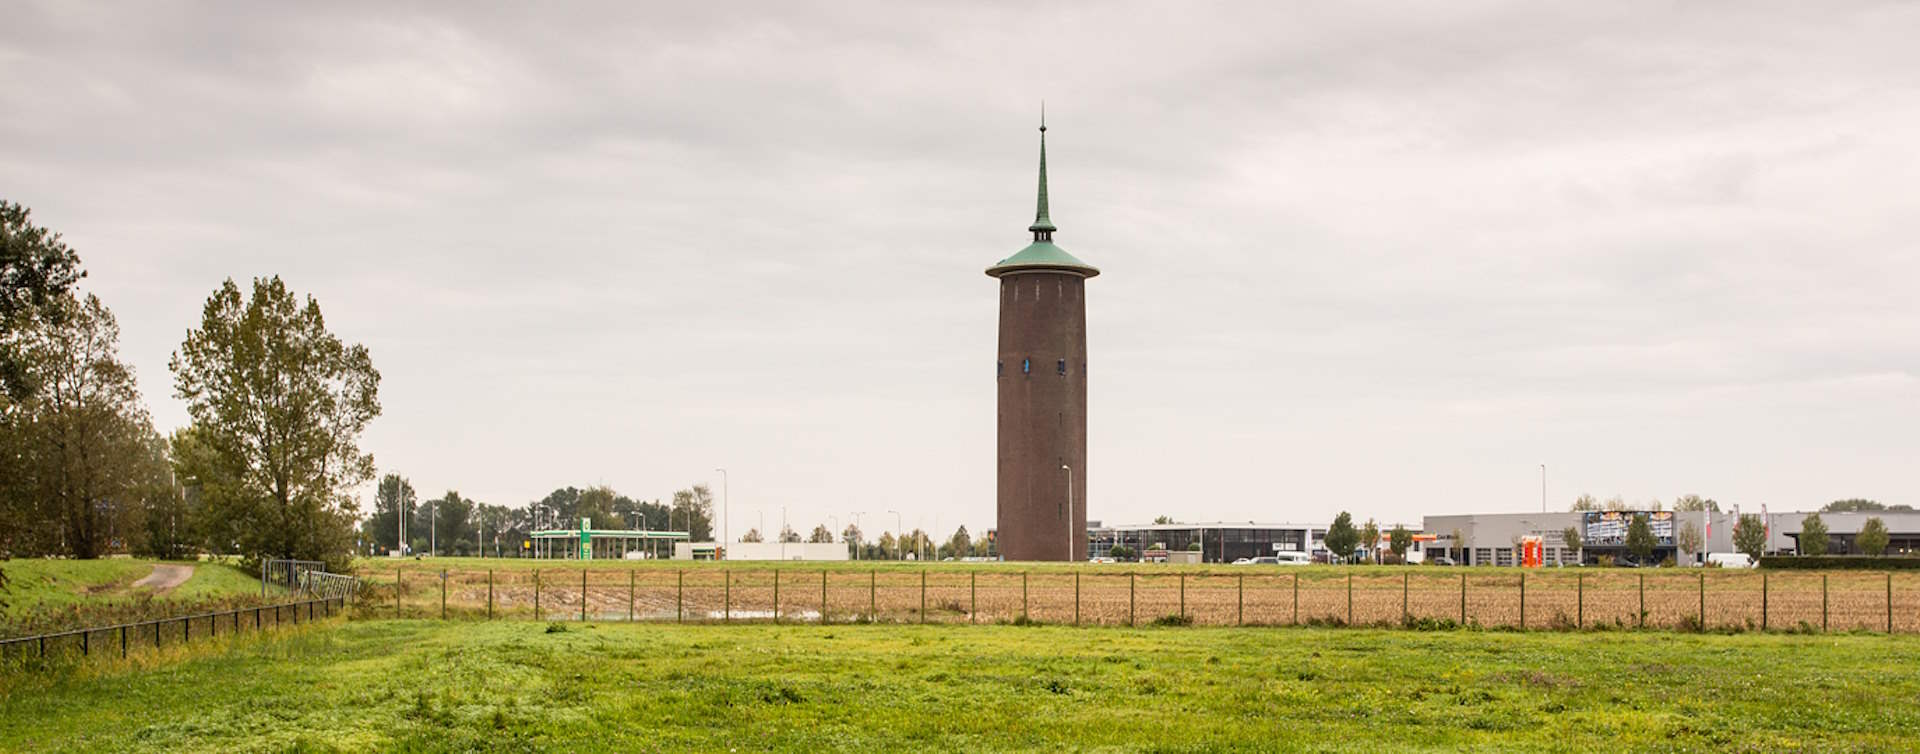 De omgeving van Veldsink - van Loo, RegioBank in Dirksland